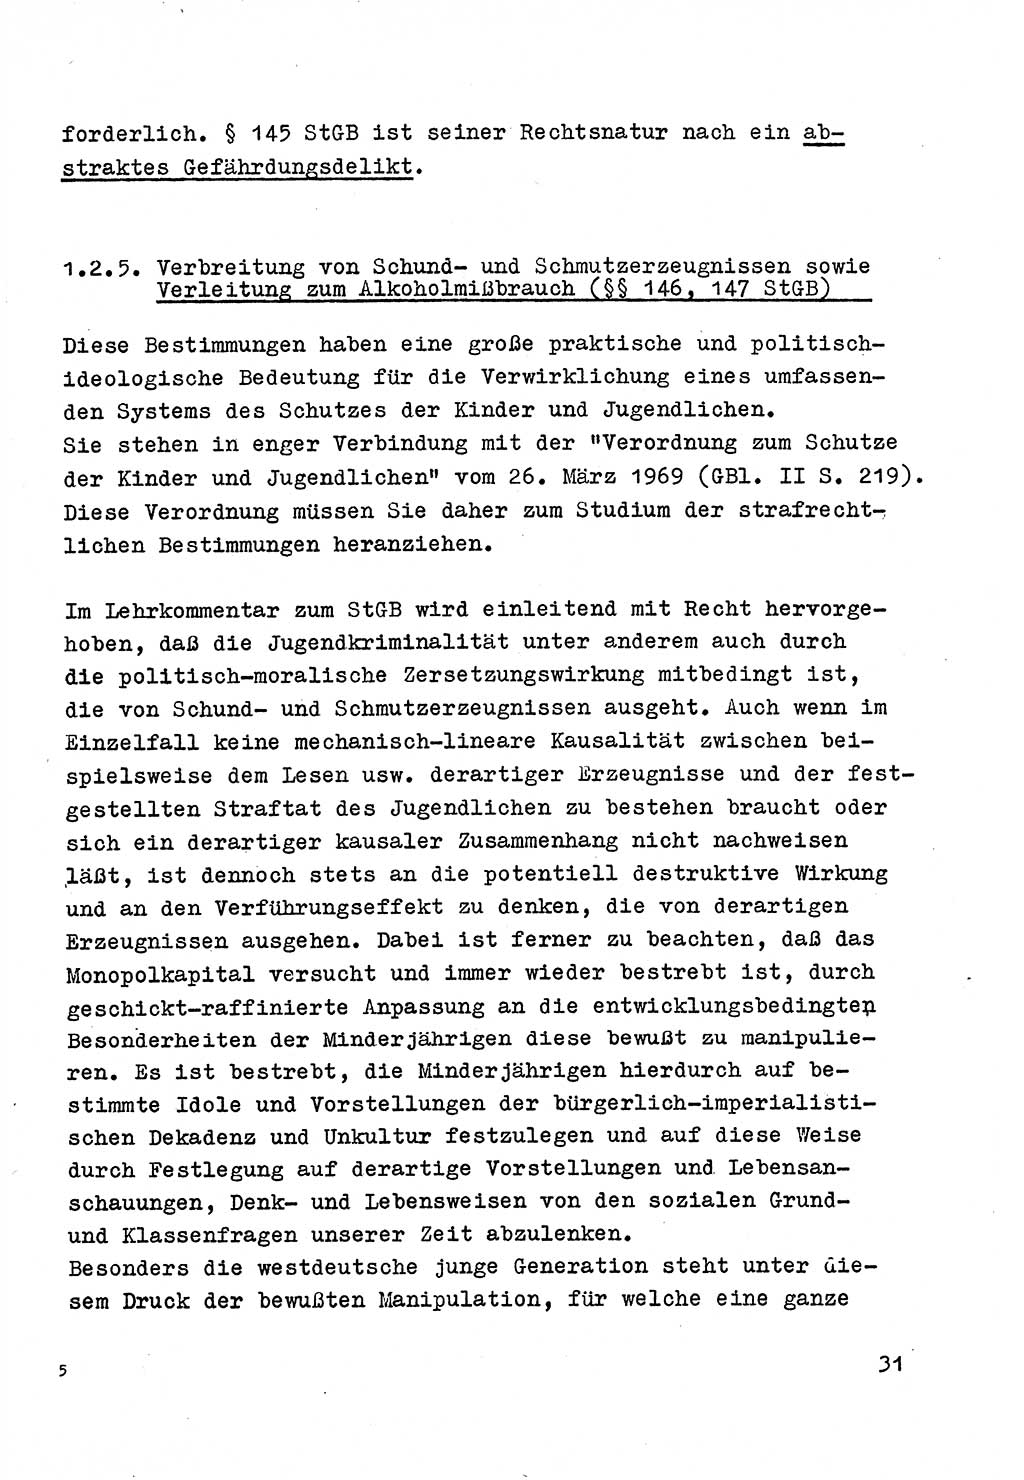 Strafrecht der DDR (Deutsche Demokratische Republik), Besonderer Teil, Lehrmaterial, Heft 4 1969, Seite 31 (Strafr. DDR BT Lehrmat. H. 4 1969, S. 31)